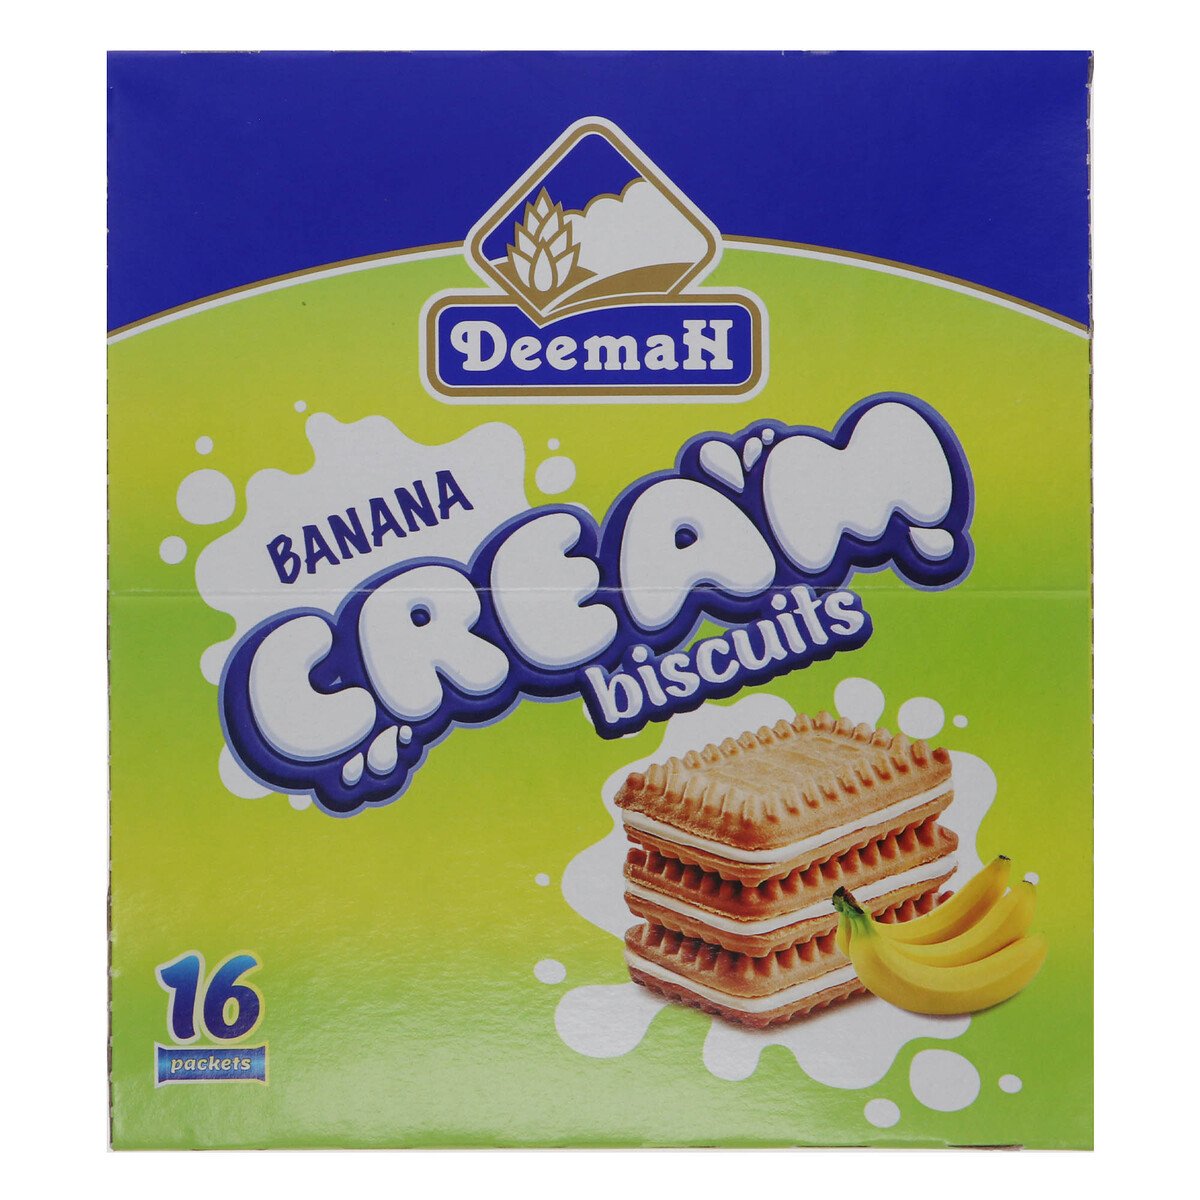 Deemah Banana Cream Biscuits 16 x 27g